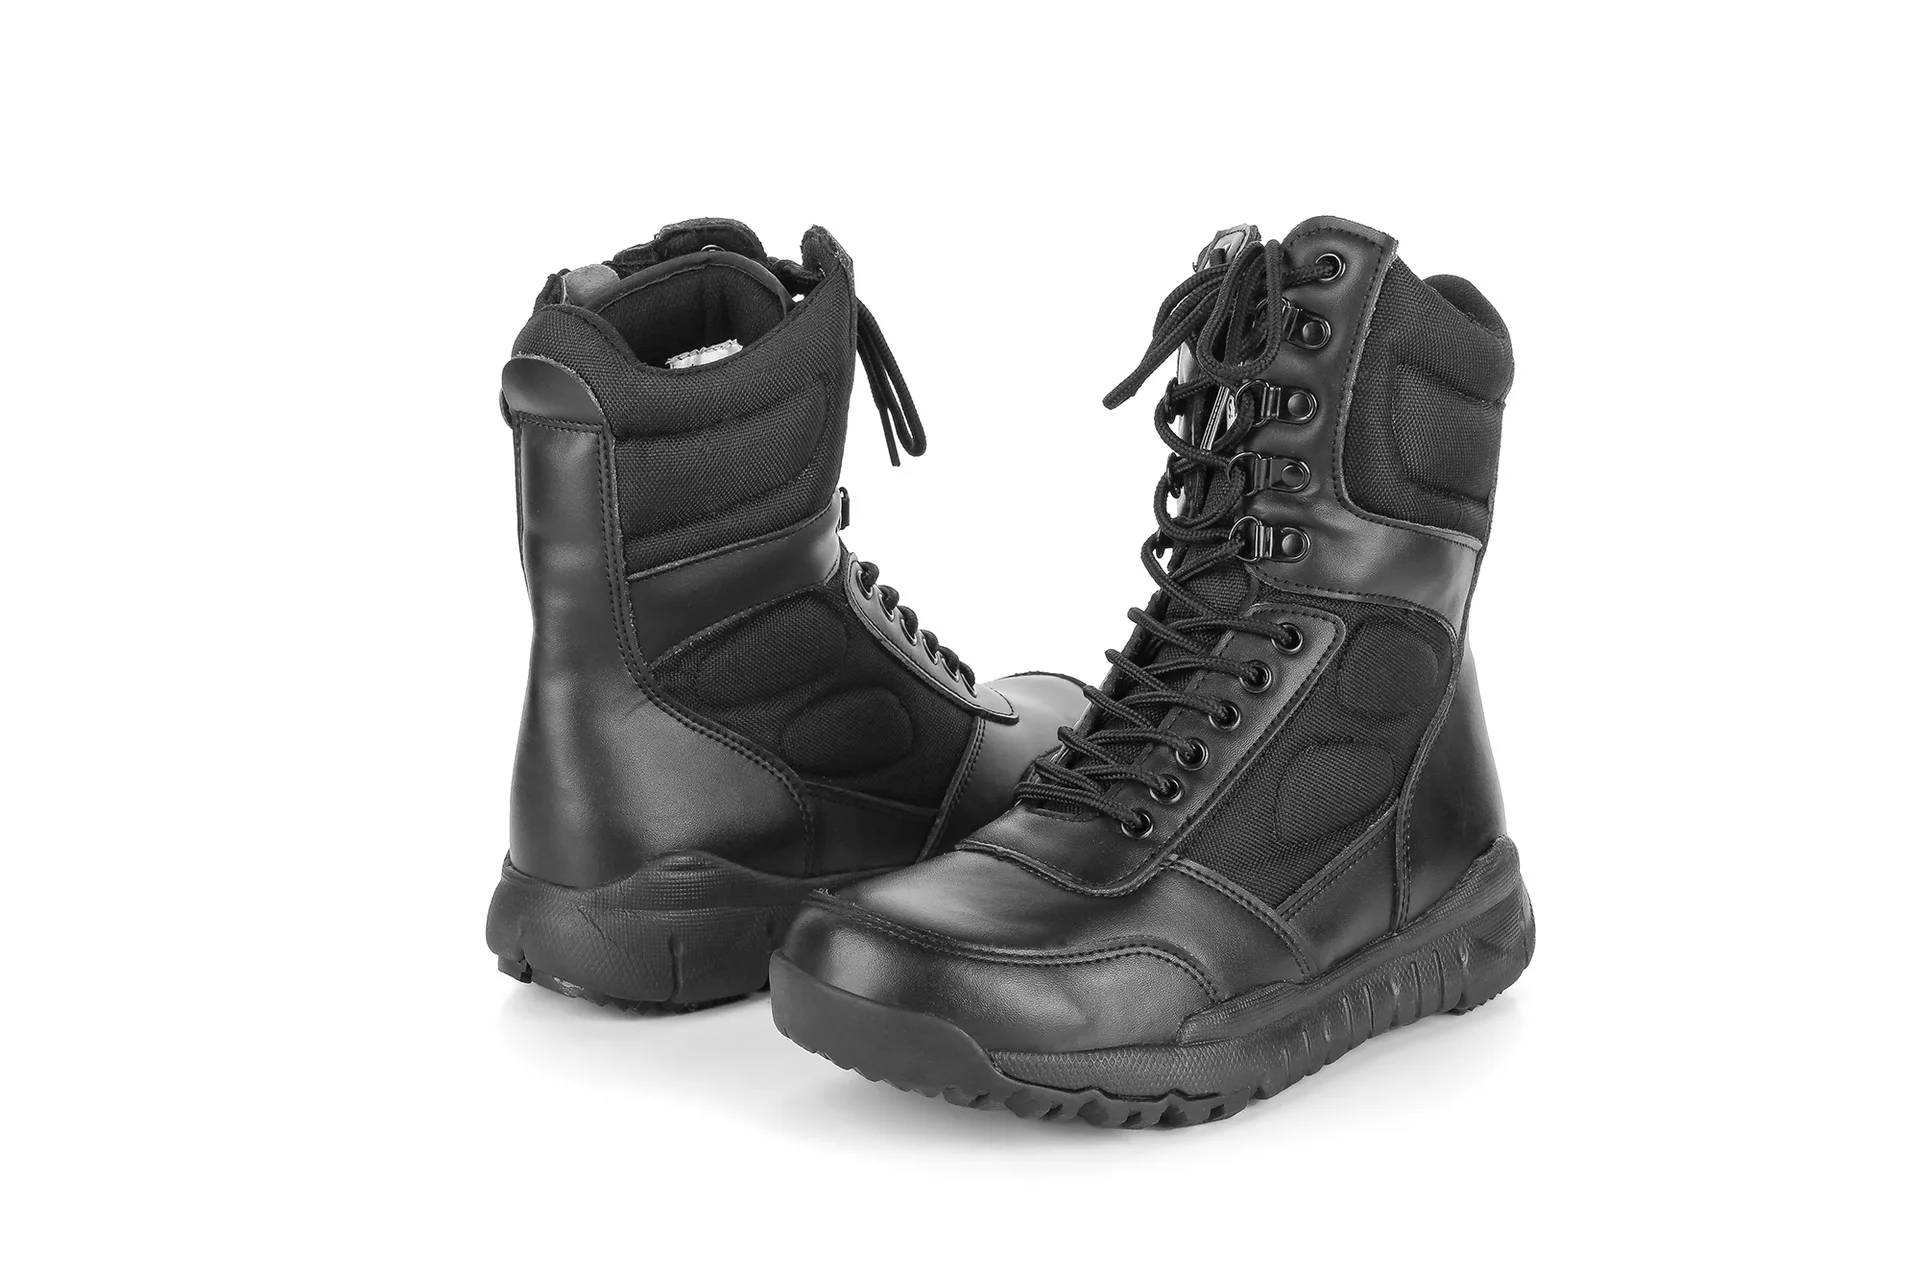 Ультра-светильник; военные ботинки; Восточный волк; Ультра-светильник; военные ботинки; SFB; парусиновые дышащие летние ботинки для боевых действий и тренировок; Уличная обувь